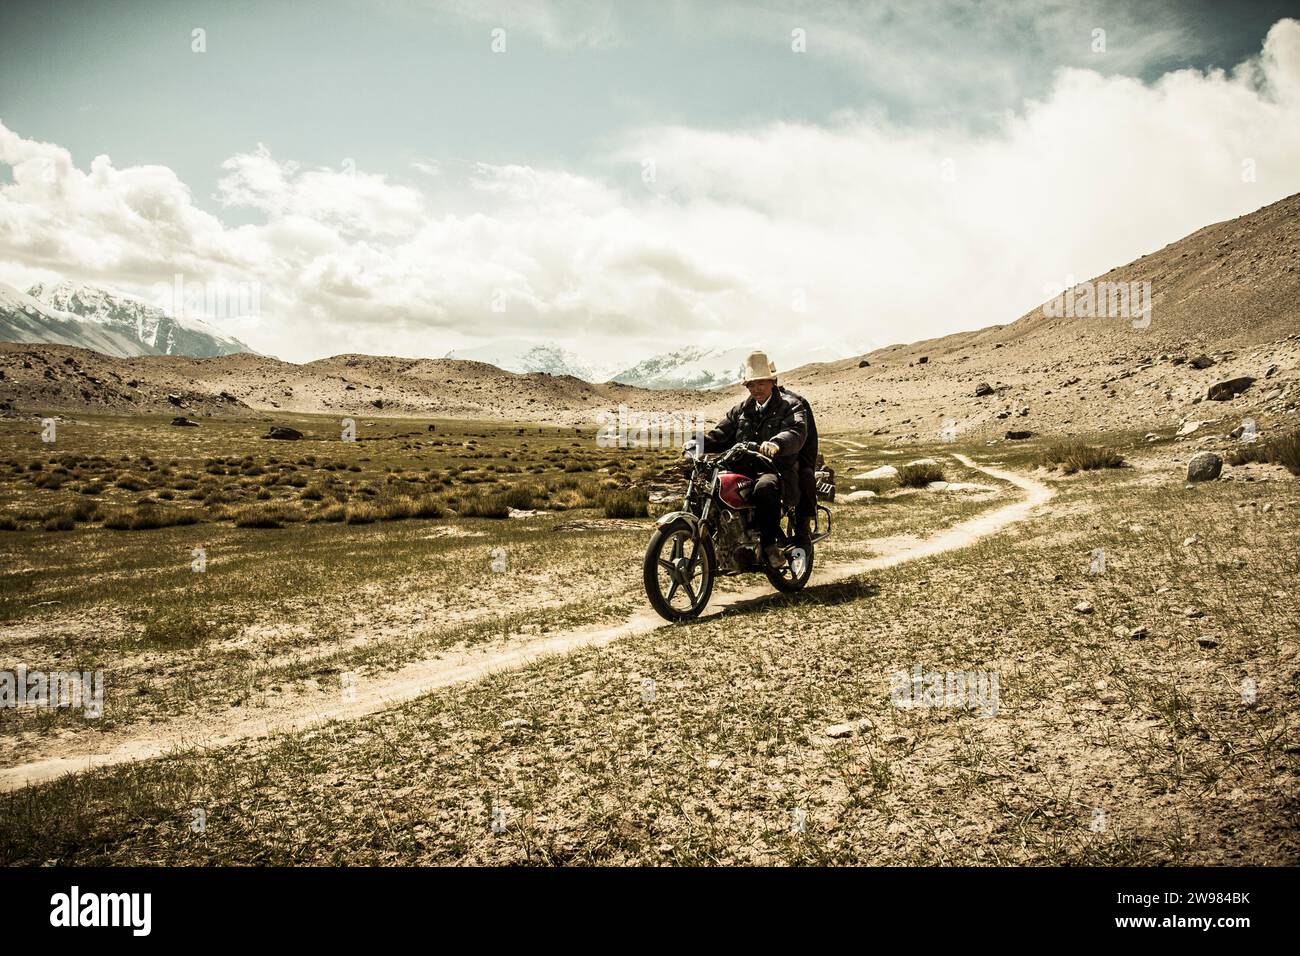 Tajik Man riding a motorcycle through the mountains Stock Photo